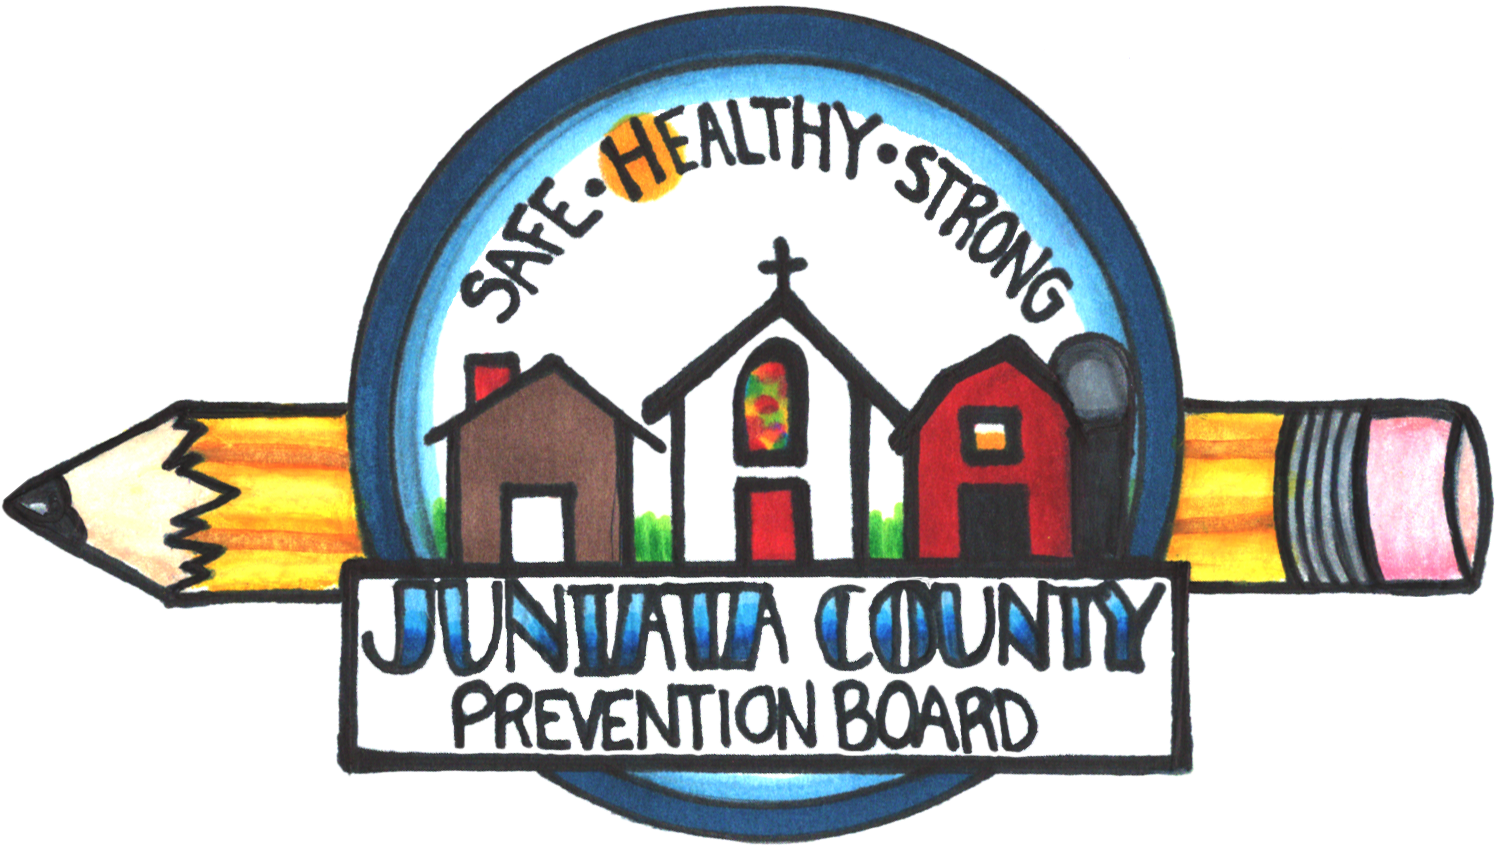 Juniata County Prevention Board - Logo (1575x875)